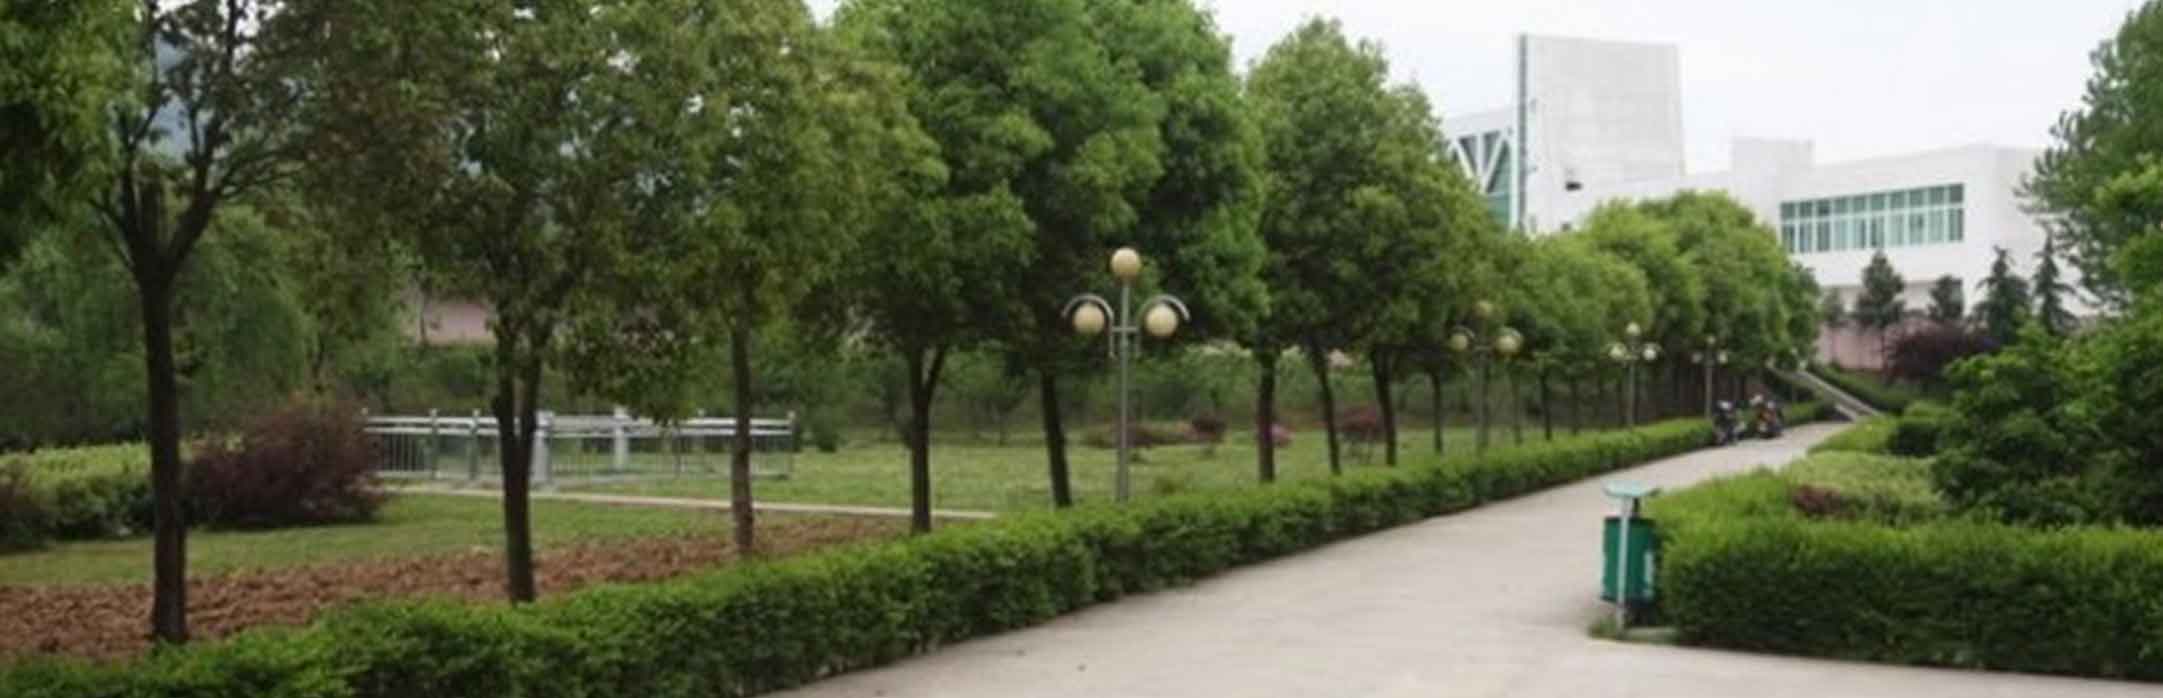 镇江赤山公墓